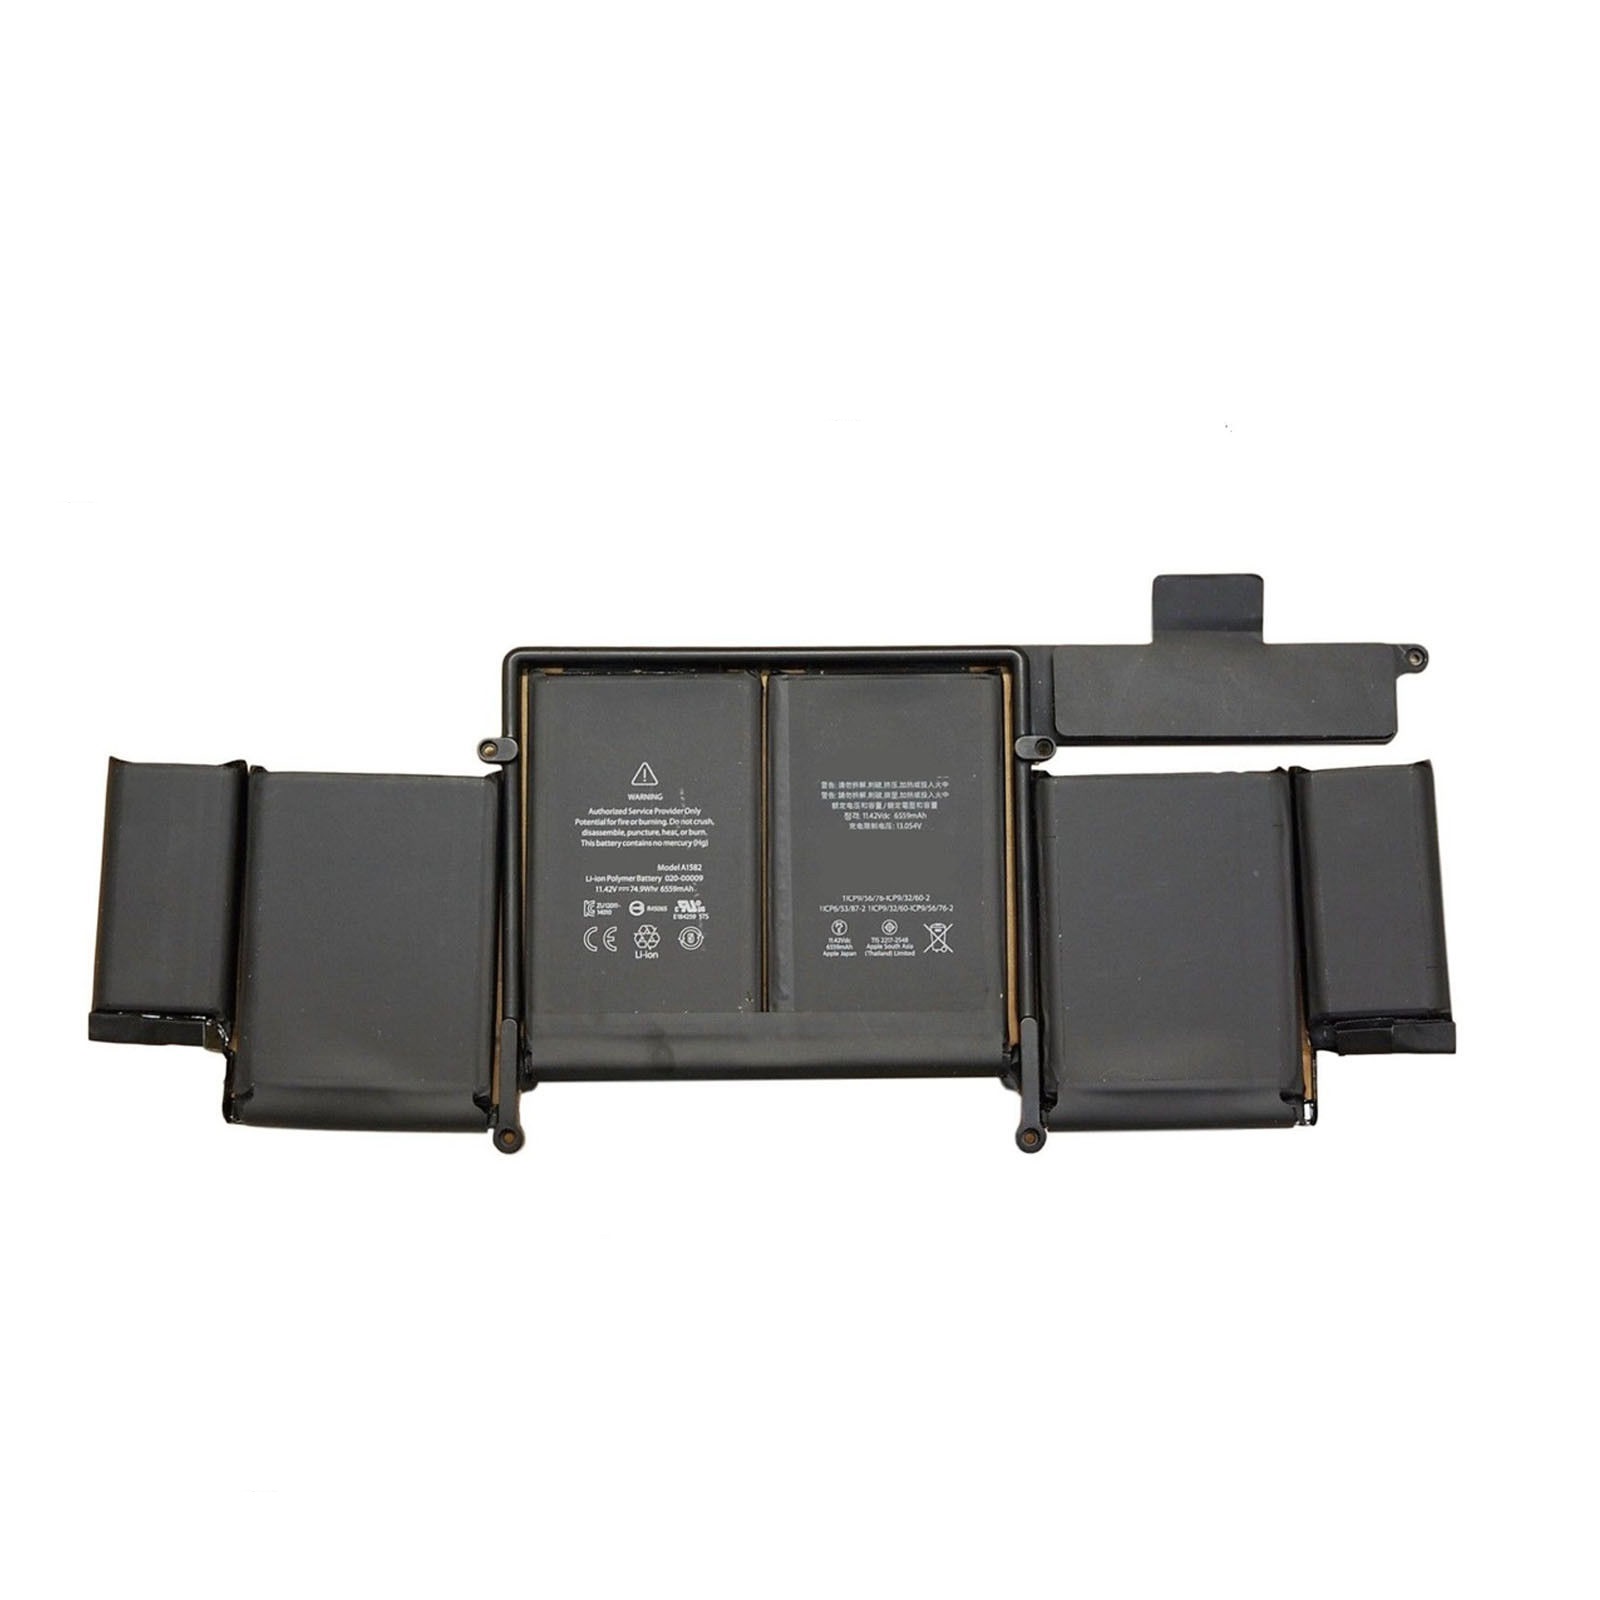 A1582 APPLE Macbook PRO Retina 13 inch A1502 2015 kompatybilny bateria - Kliknij obrazek, aby zamkn±æ